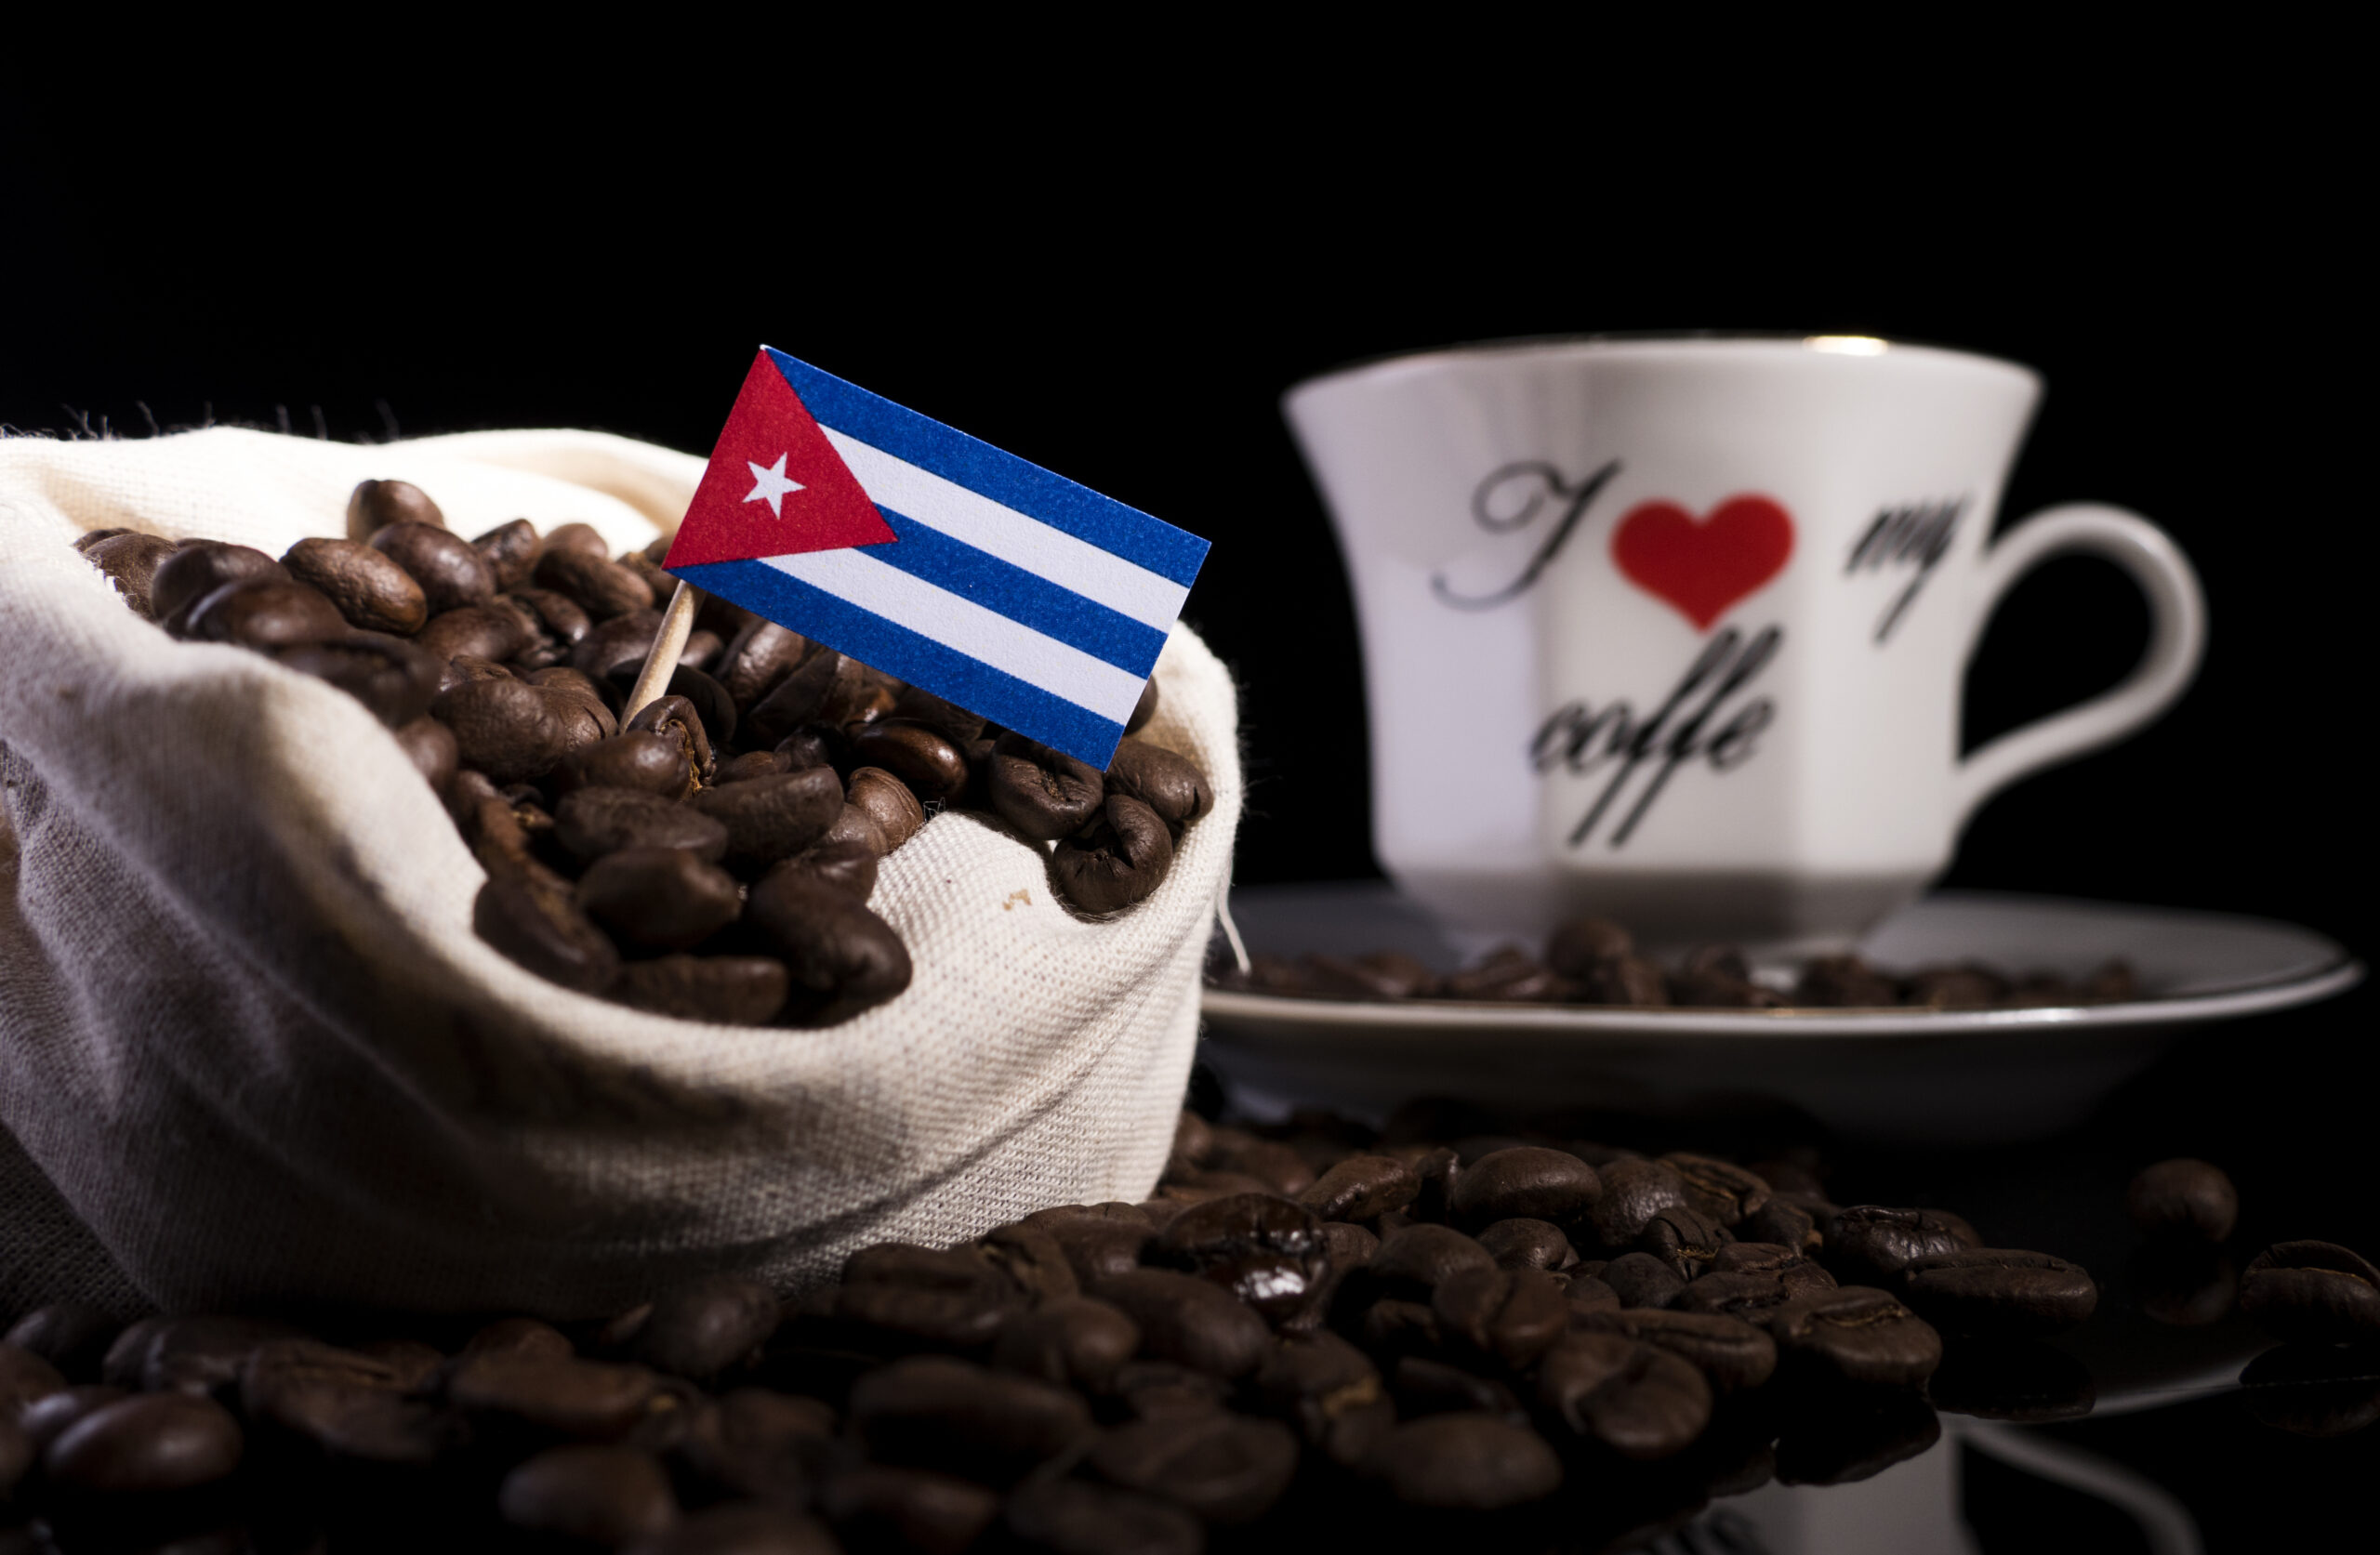 empresa mixta café cubano lavazza